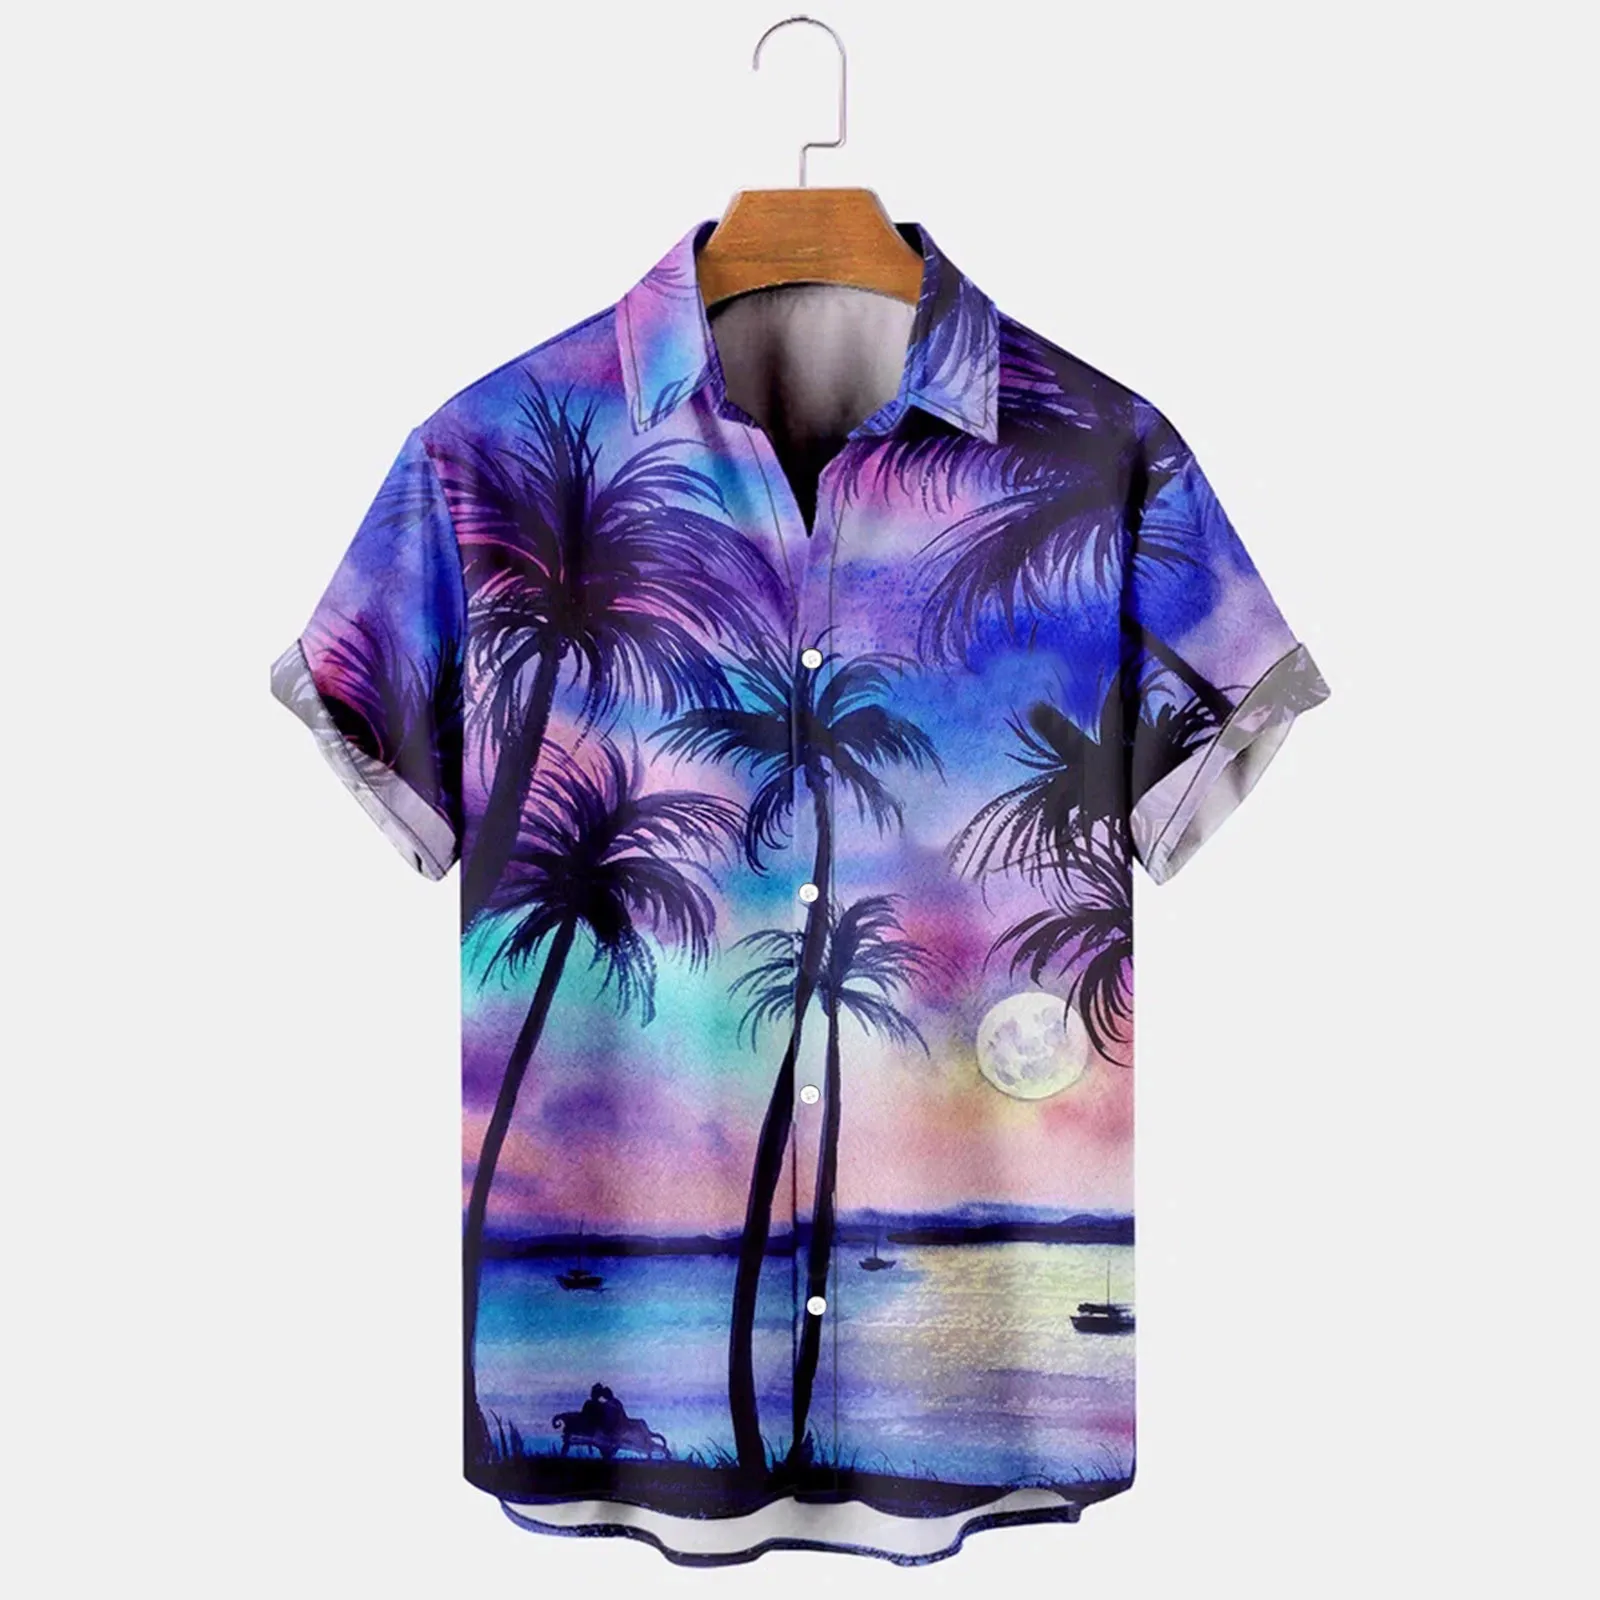 

Гавайская пляжная одежда, рубашка с принтом дерева для мужчин, рубашки с воротником с лацканами и коротким рукавом, мужская рубашка, рубашки, блузы, пляжные праздничные рубашки